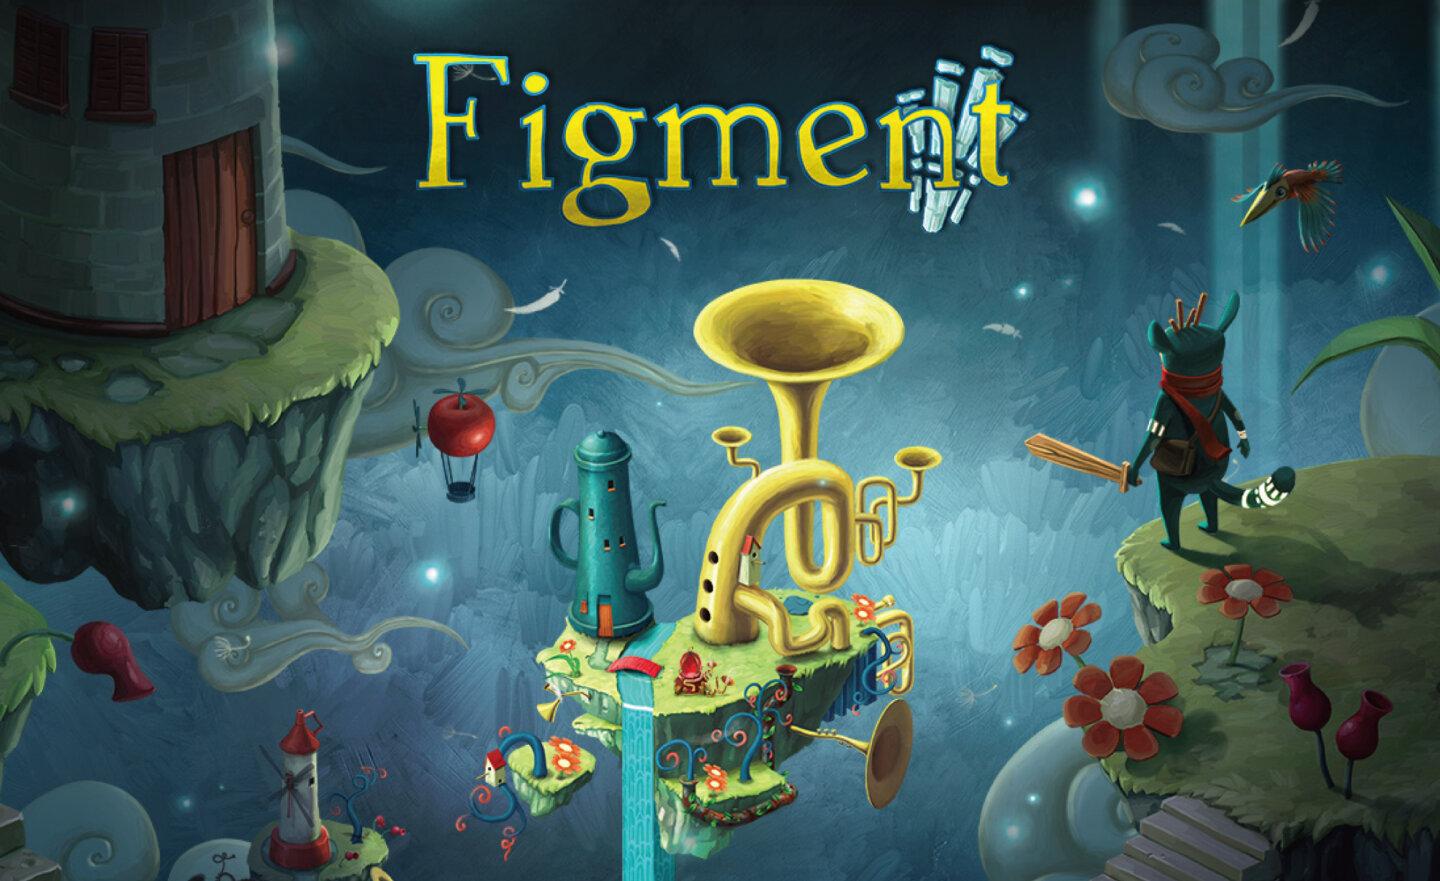 【限時免費】登入 Steam 領取《Figment》，2023 年 3 月 10 日凌晨 2:00 前永久保留